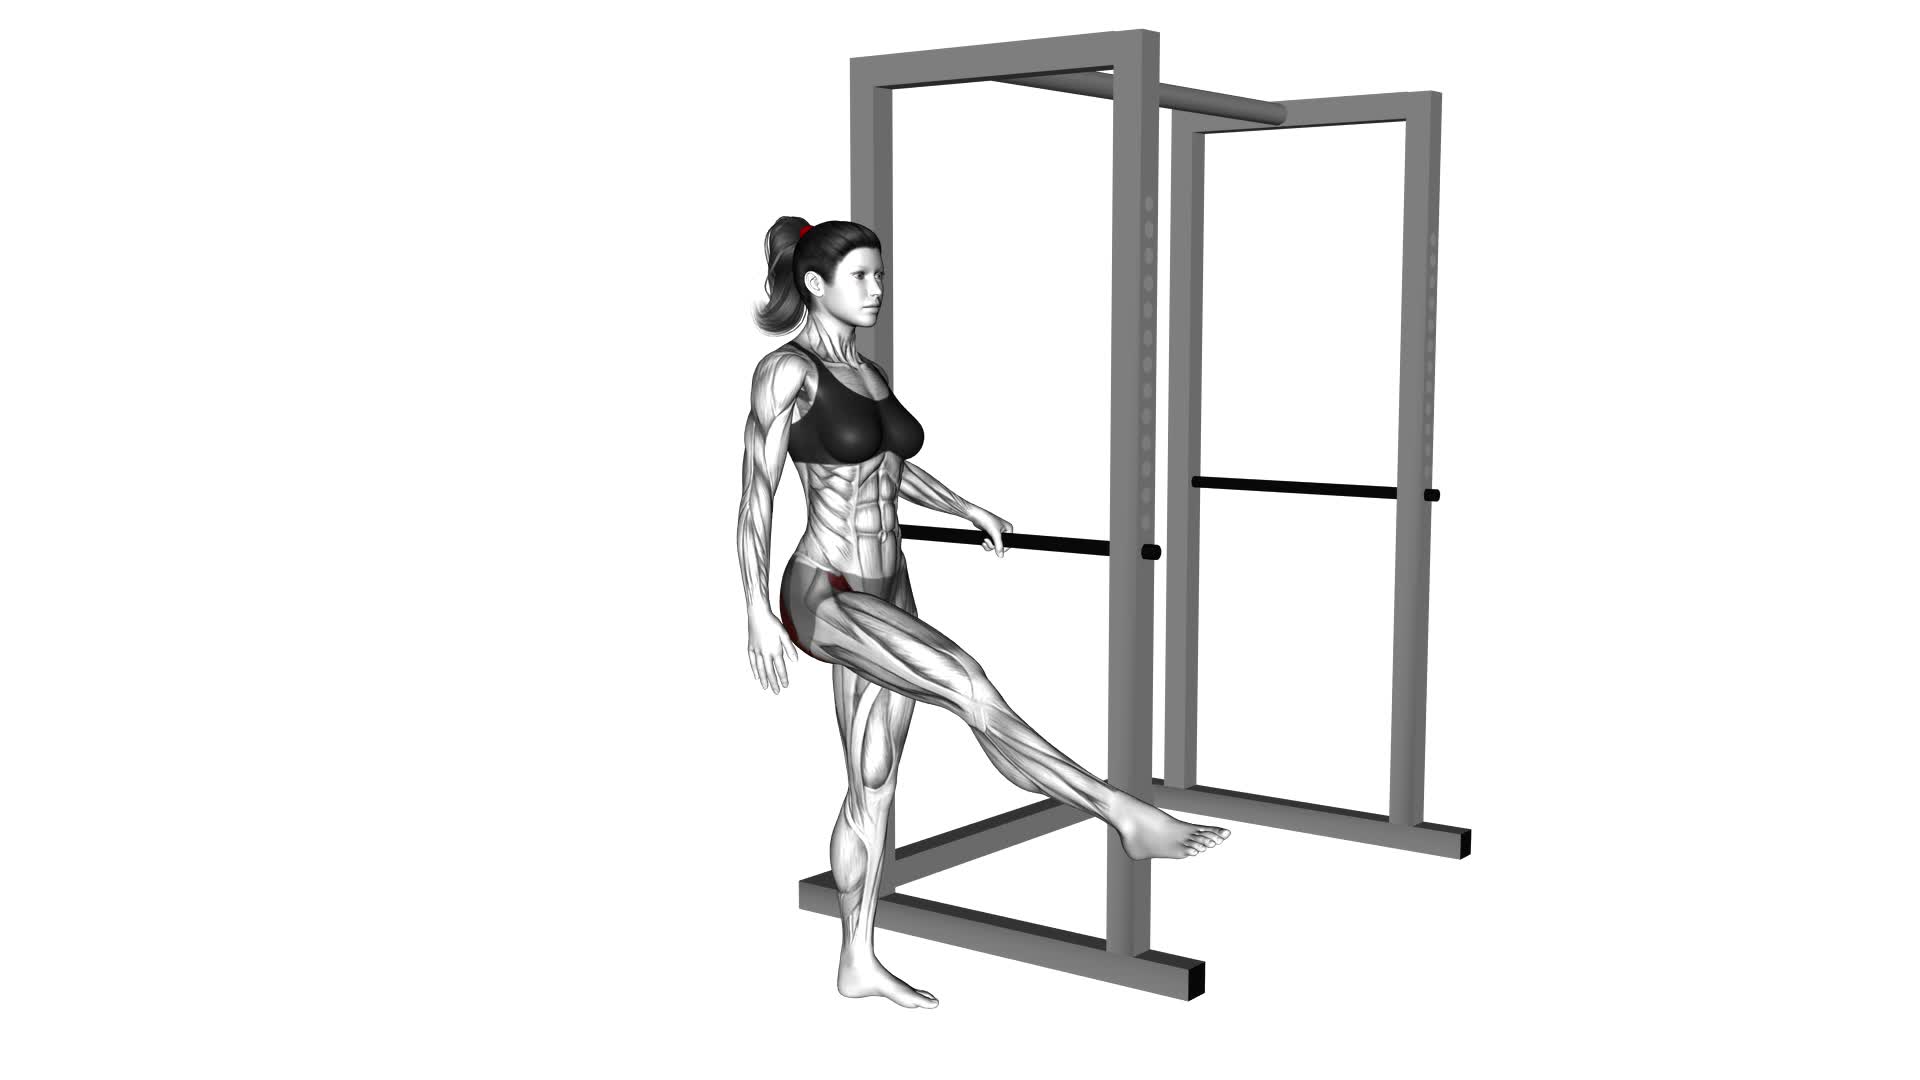 Back Forward Leg Swings (female) - Video Exercise Guide & Tips